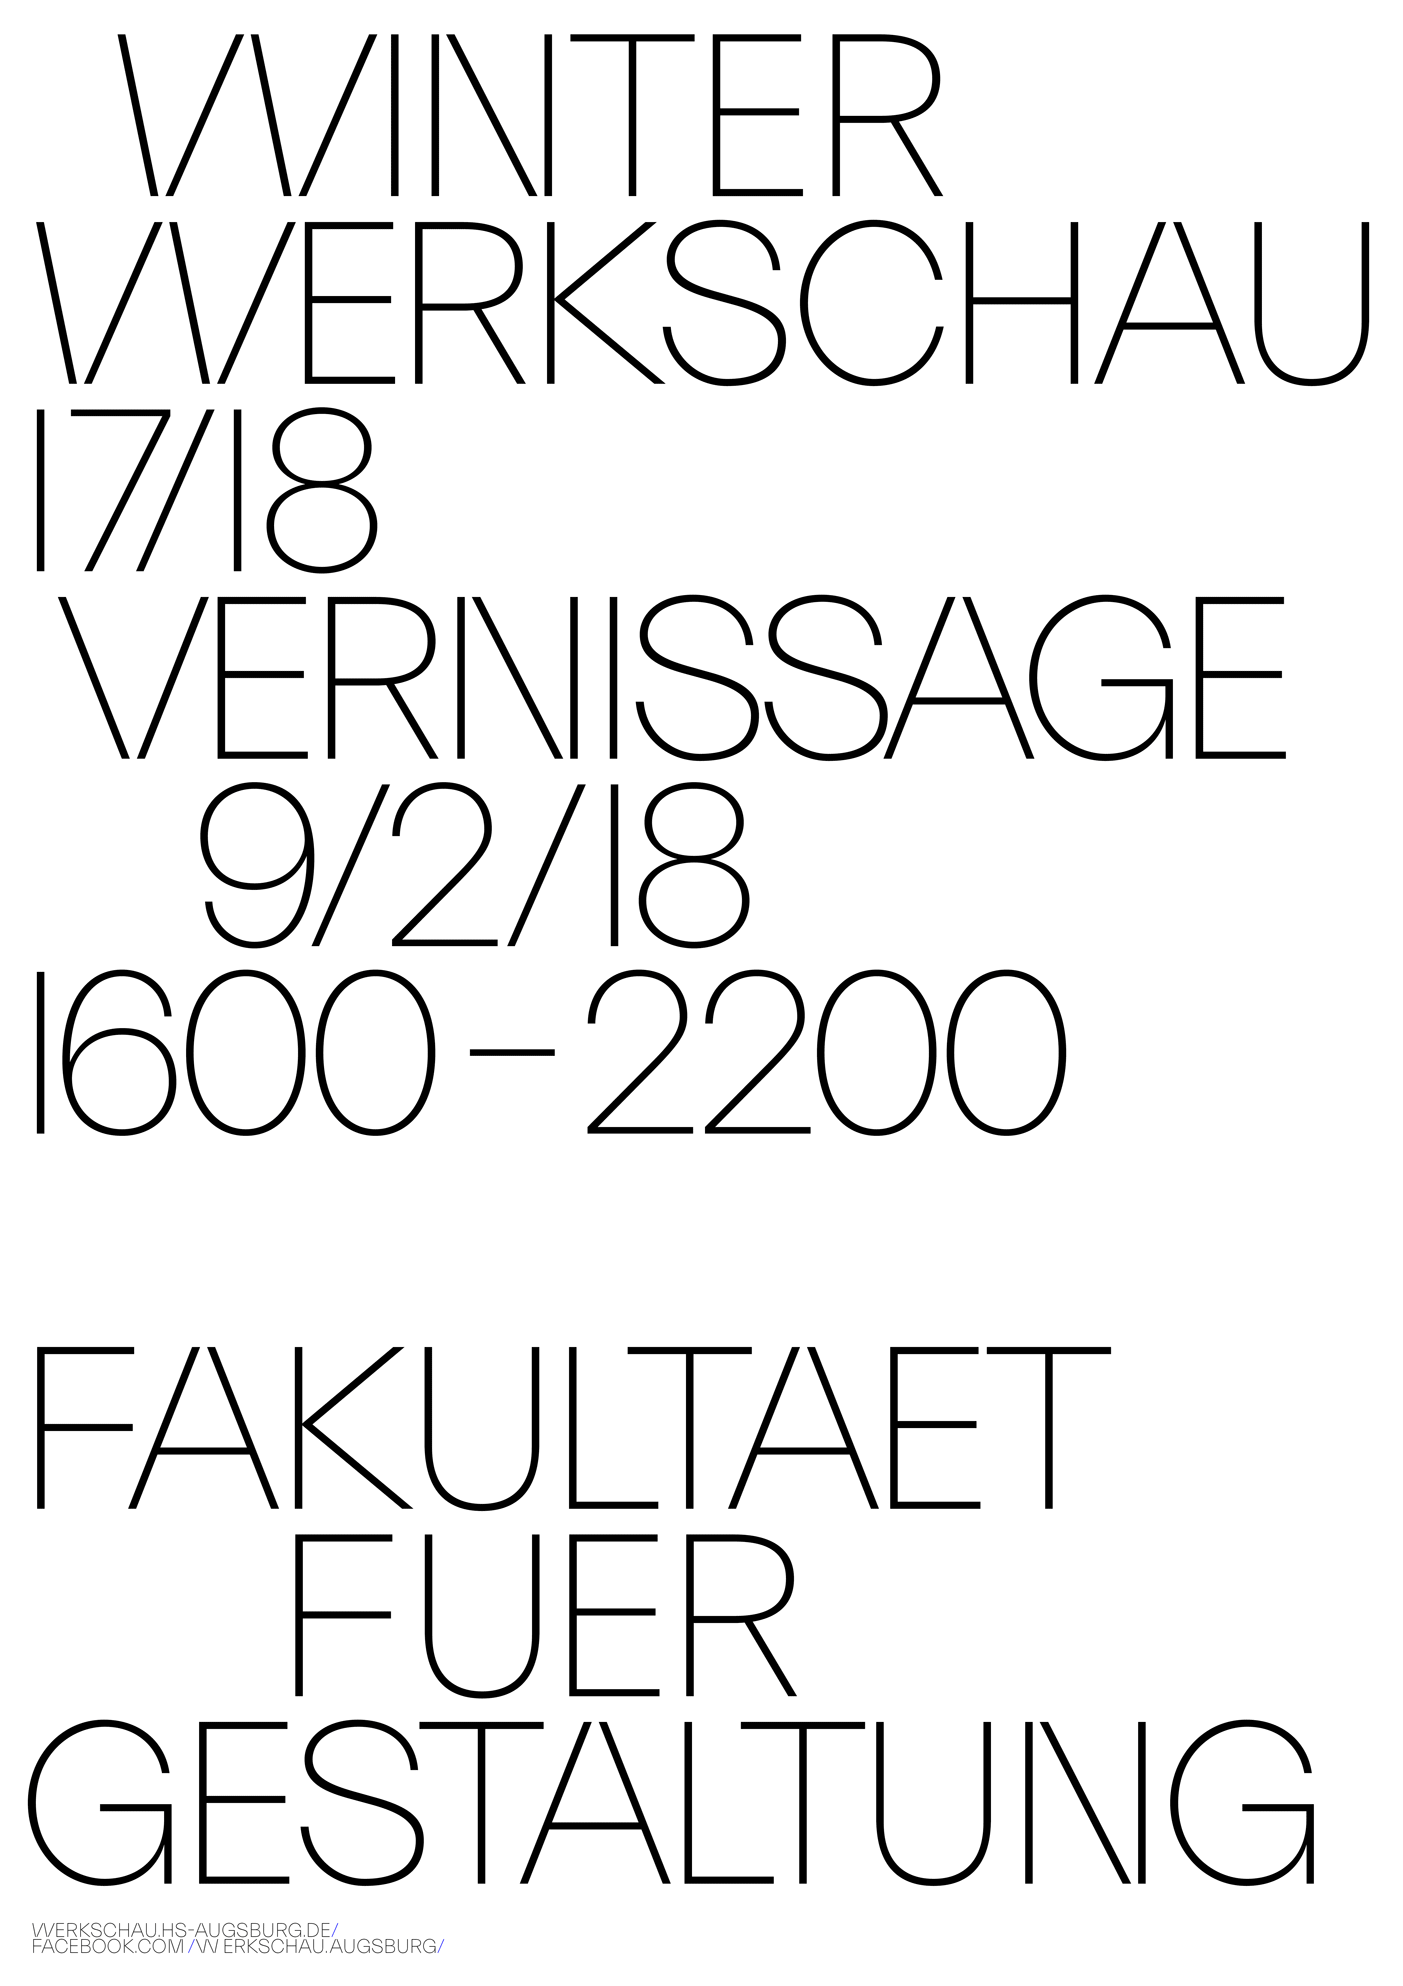 Winter Werkschau 17/18 at Hochschule Augsburg 4